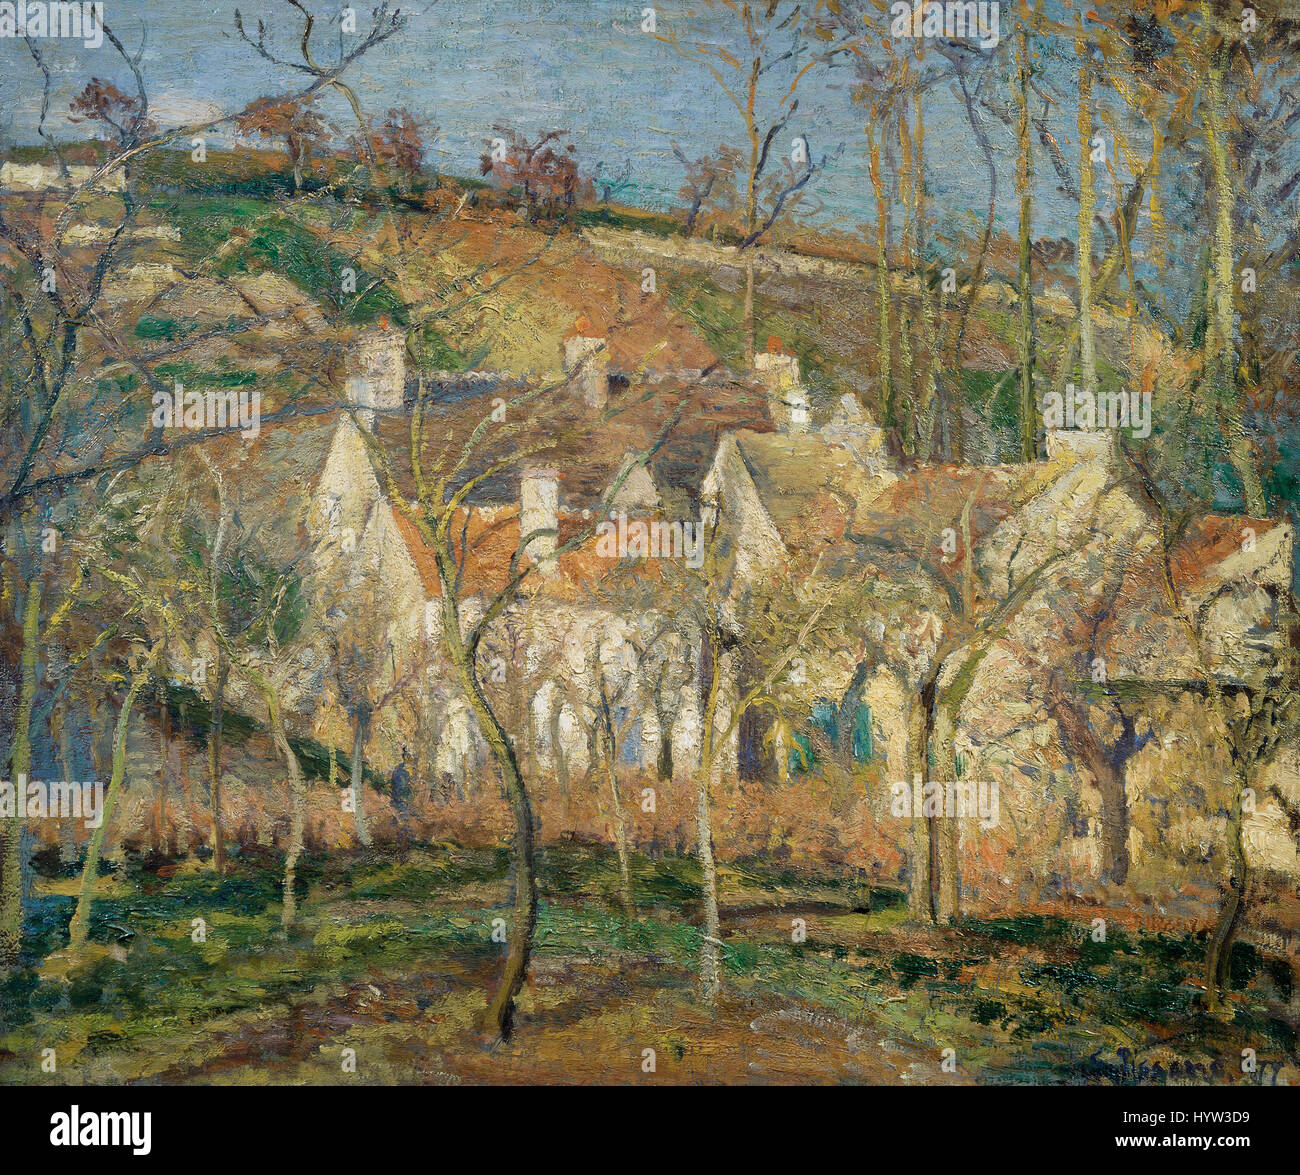 Camille Pissarro (1830-1930). Rote Dächer, Dorf Ecke, Wintereffekte. 1877 impressionistischen Stil. Musée d ' Orsay. Paris. Frankreich. Stockfoto